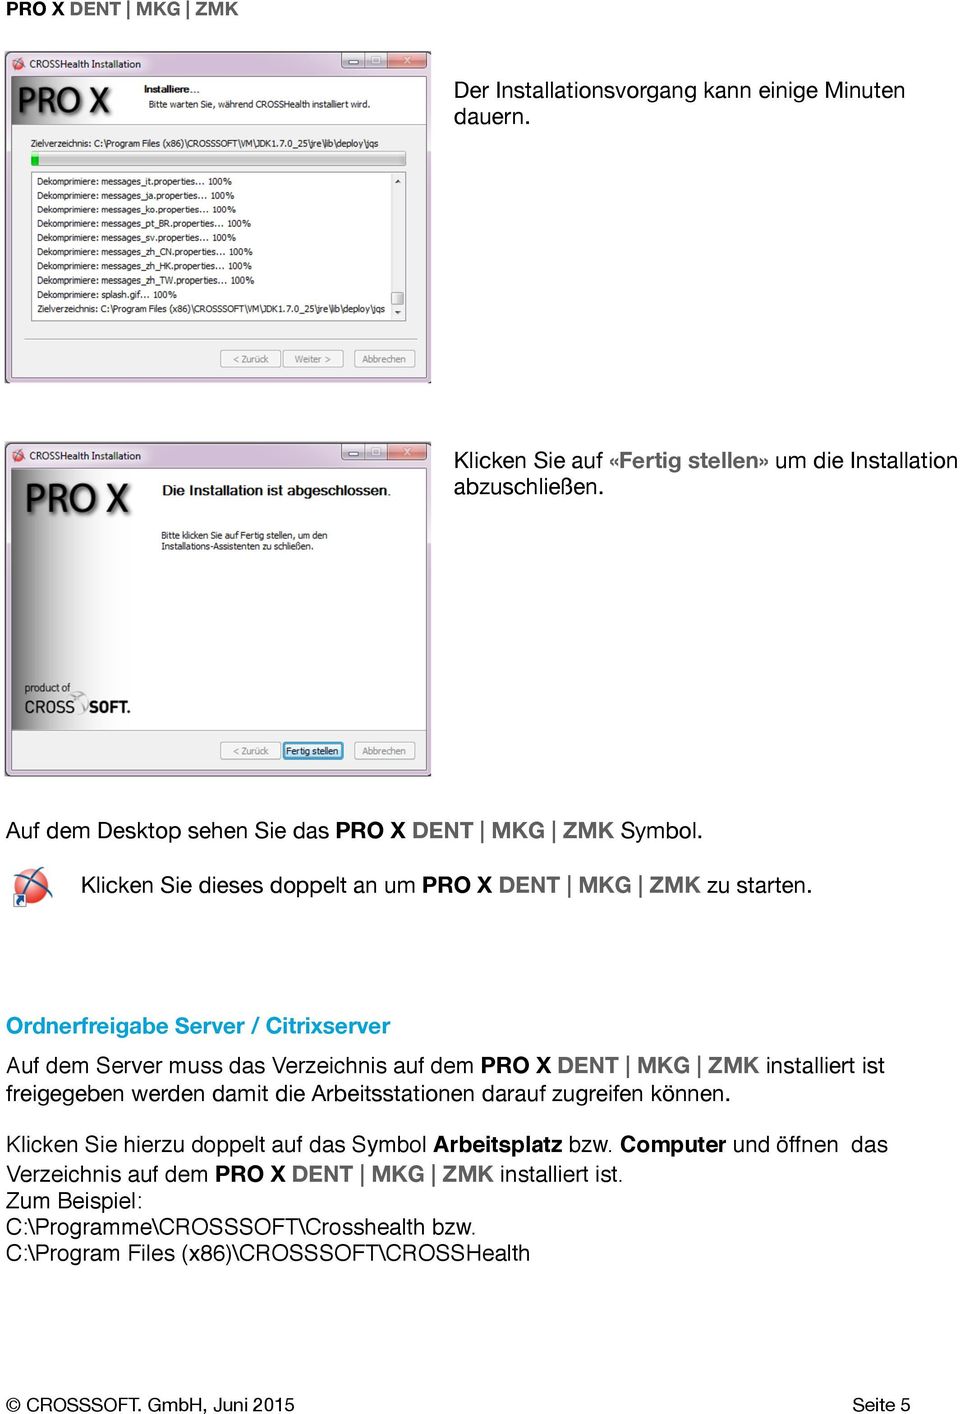 Ordnerfreigabe Server / Citrixserver Auf dem Server muss das Verzeichnis auf dem PRO X DENT MKG ZMK installiert ist freigegeben werden damit die Arbeitsstationen darauf